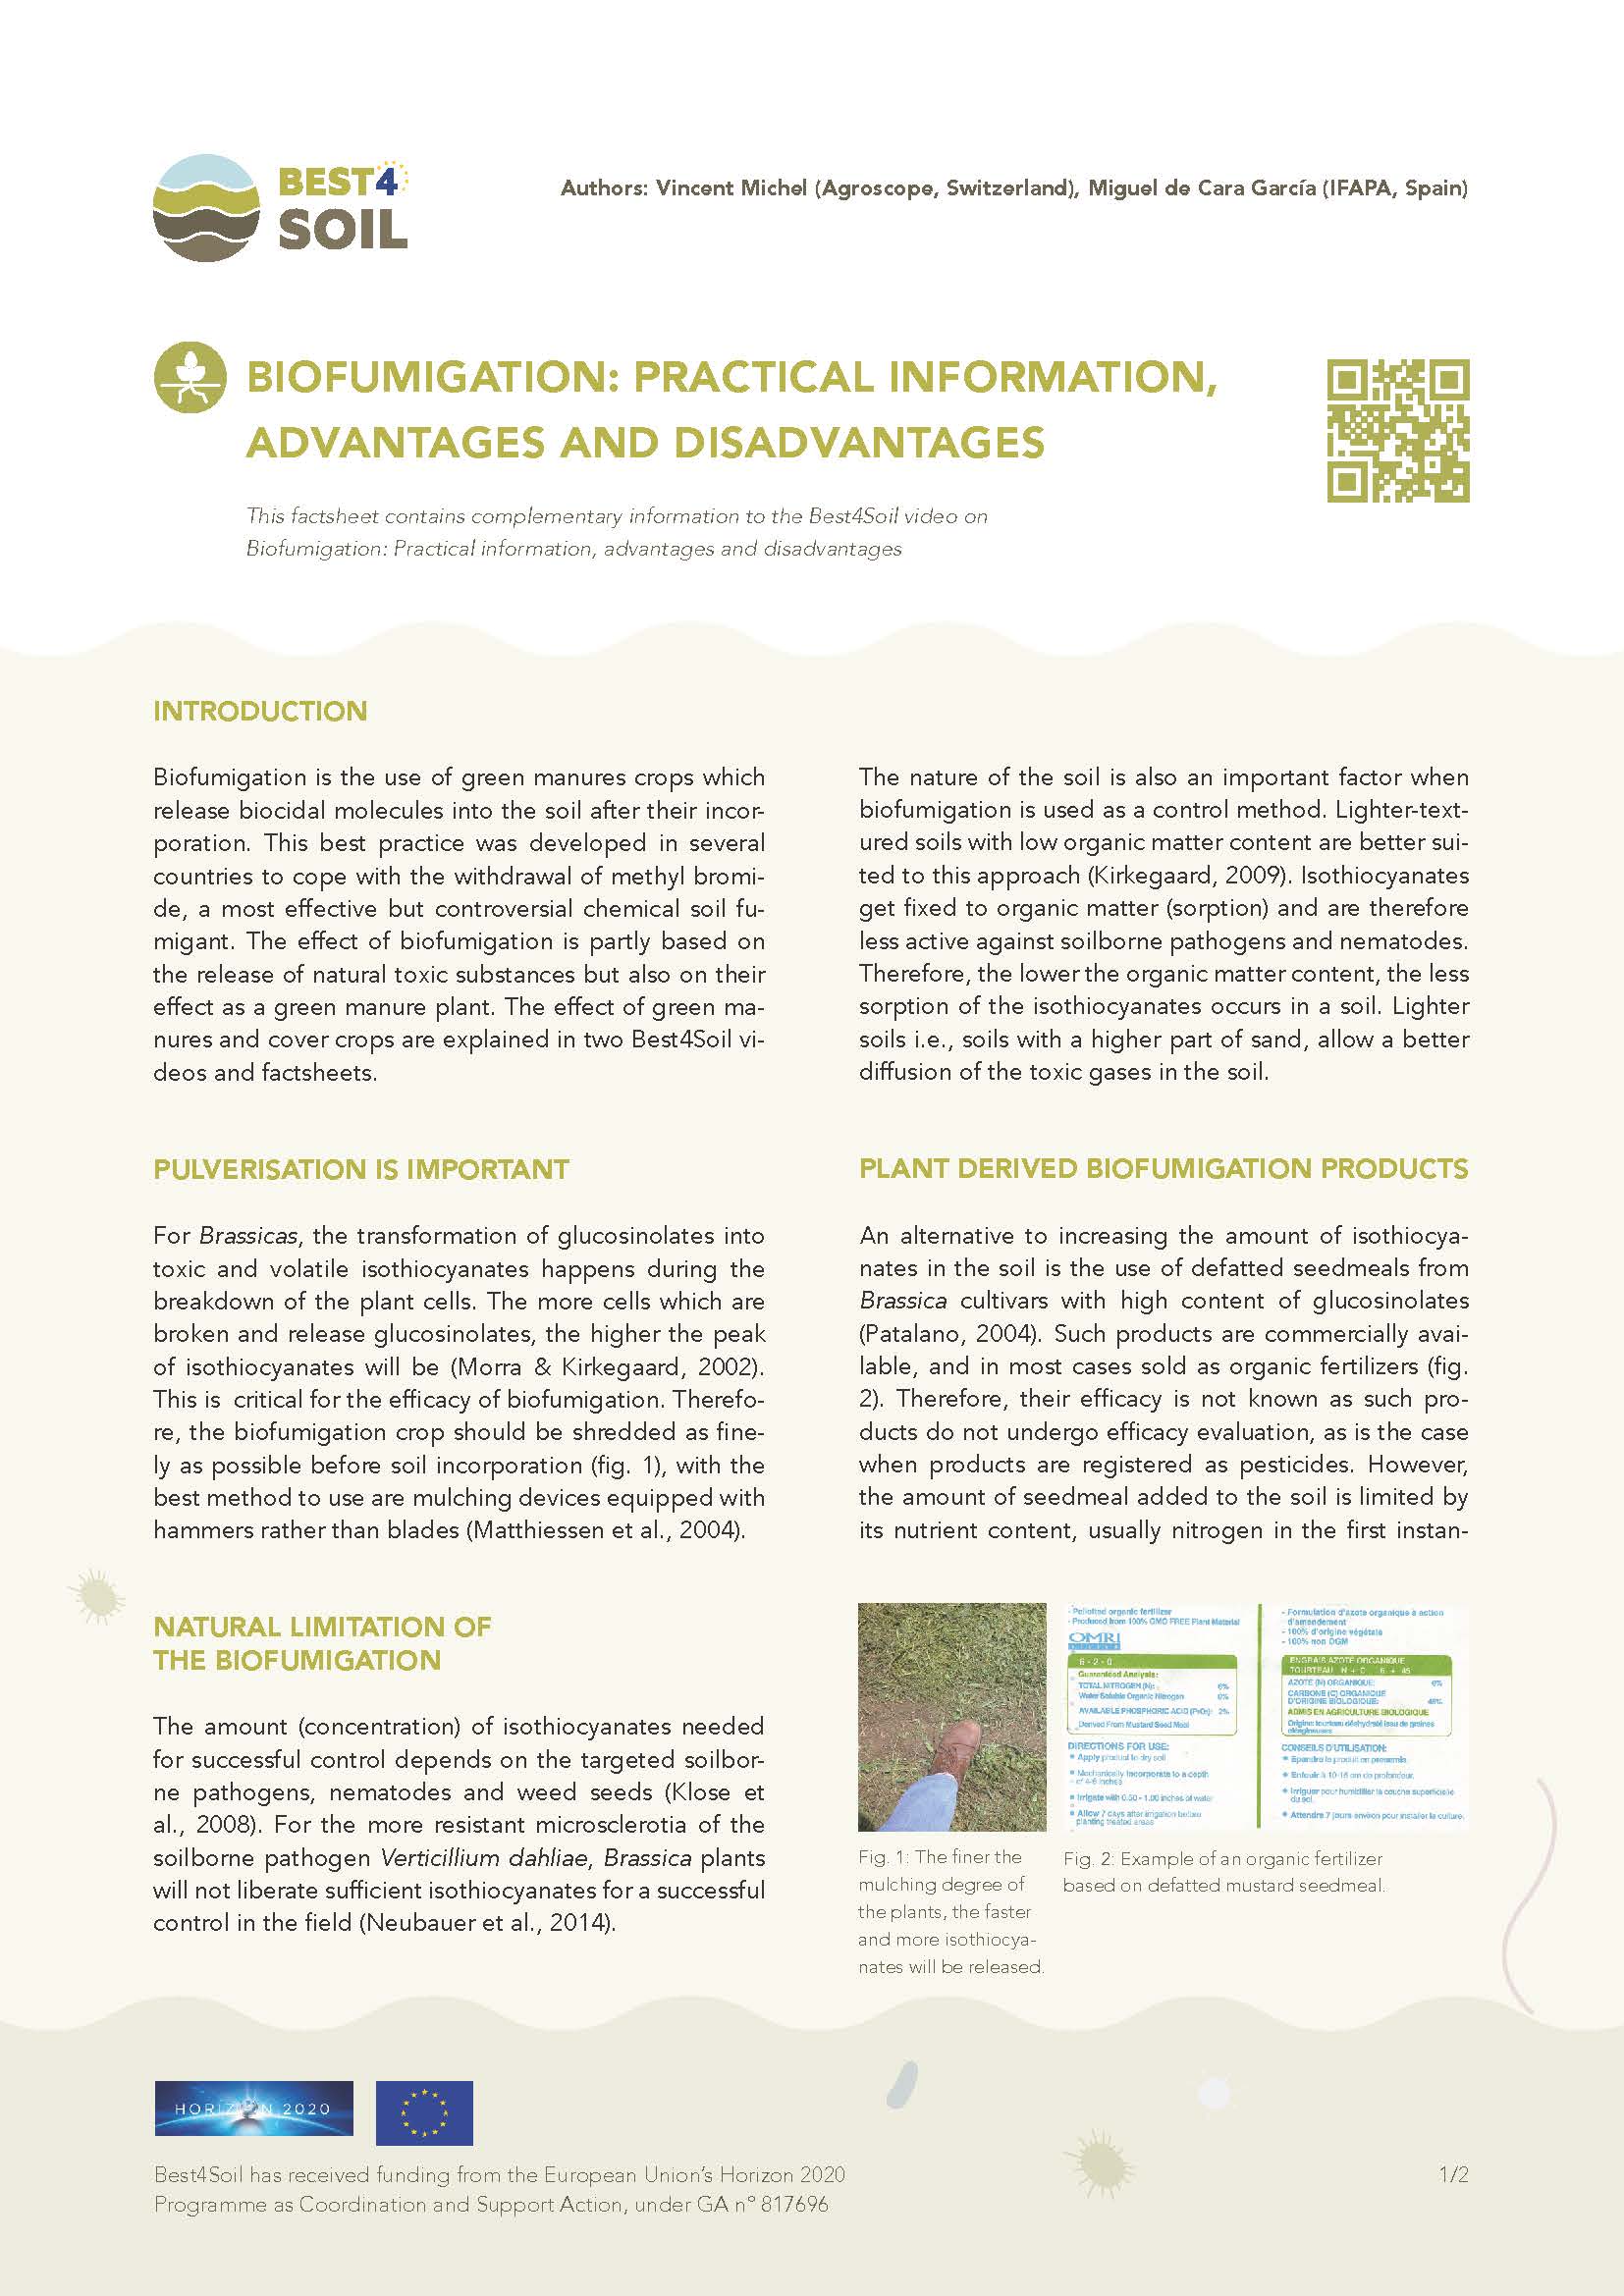 Biofumigācija: praktiska informācija, priekšrocības un trūkumi (Best4Soil faktu lapa)